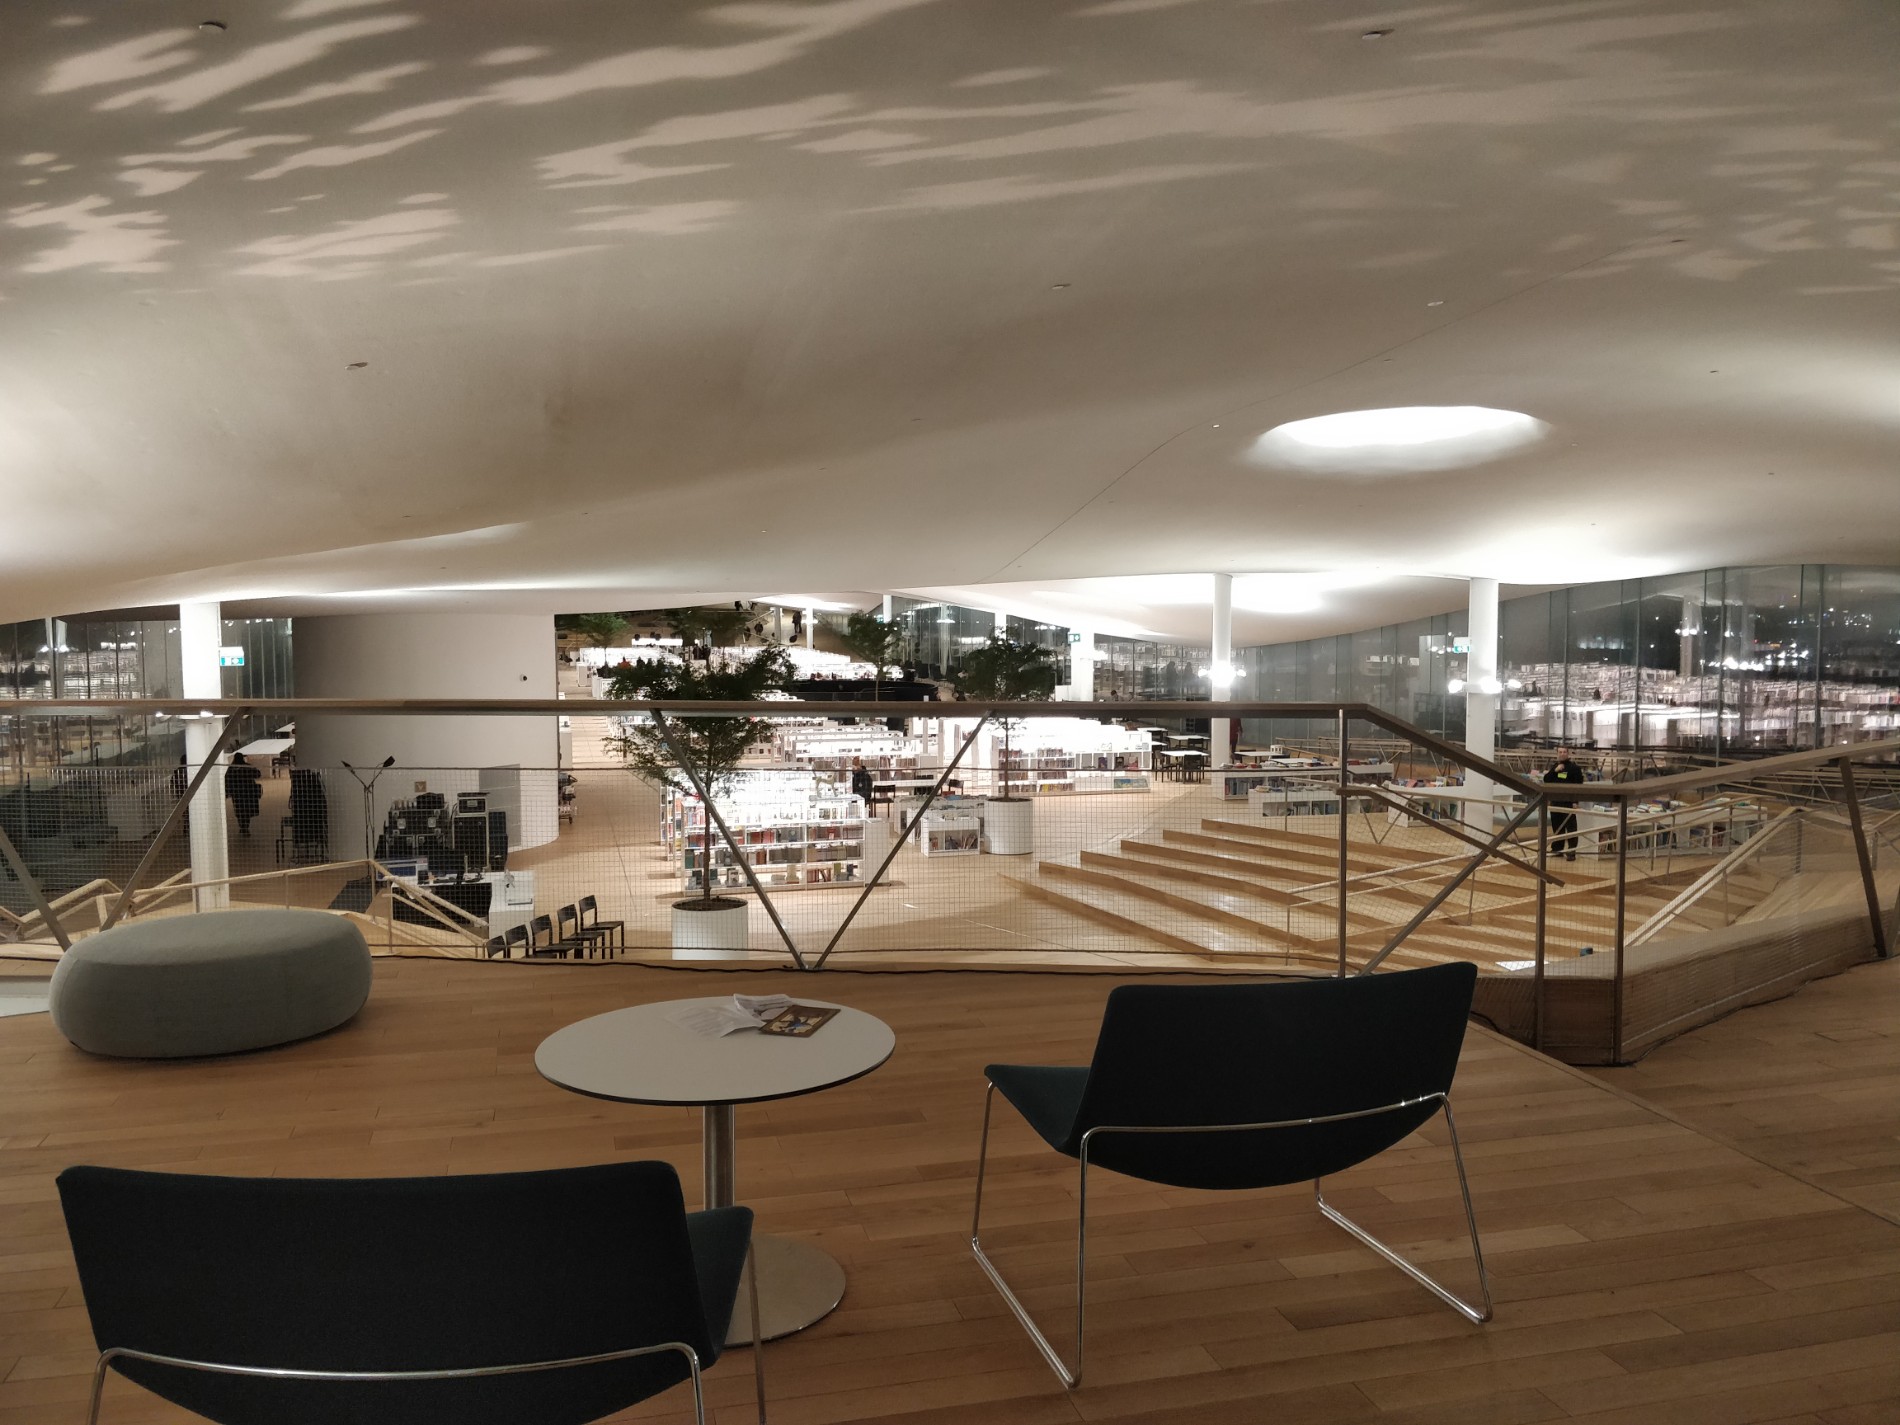 荷 蘭 赫 爾 辛 基 中 央 圖 書 館 ， 現 代 化 的 空 間 設 計 奠 基 在 平 等 與 開 放 的 先 決 條 件 之 上 ， 期 許 為 市 民 提 供 一 個 自 由 的 空 間 。   ( 圖 片 取 自 維 基 百 科 b y   T u u k k a H ) 